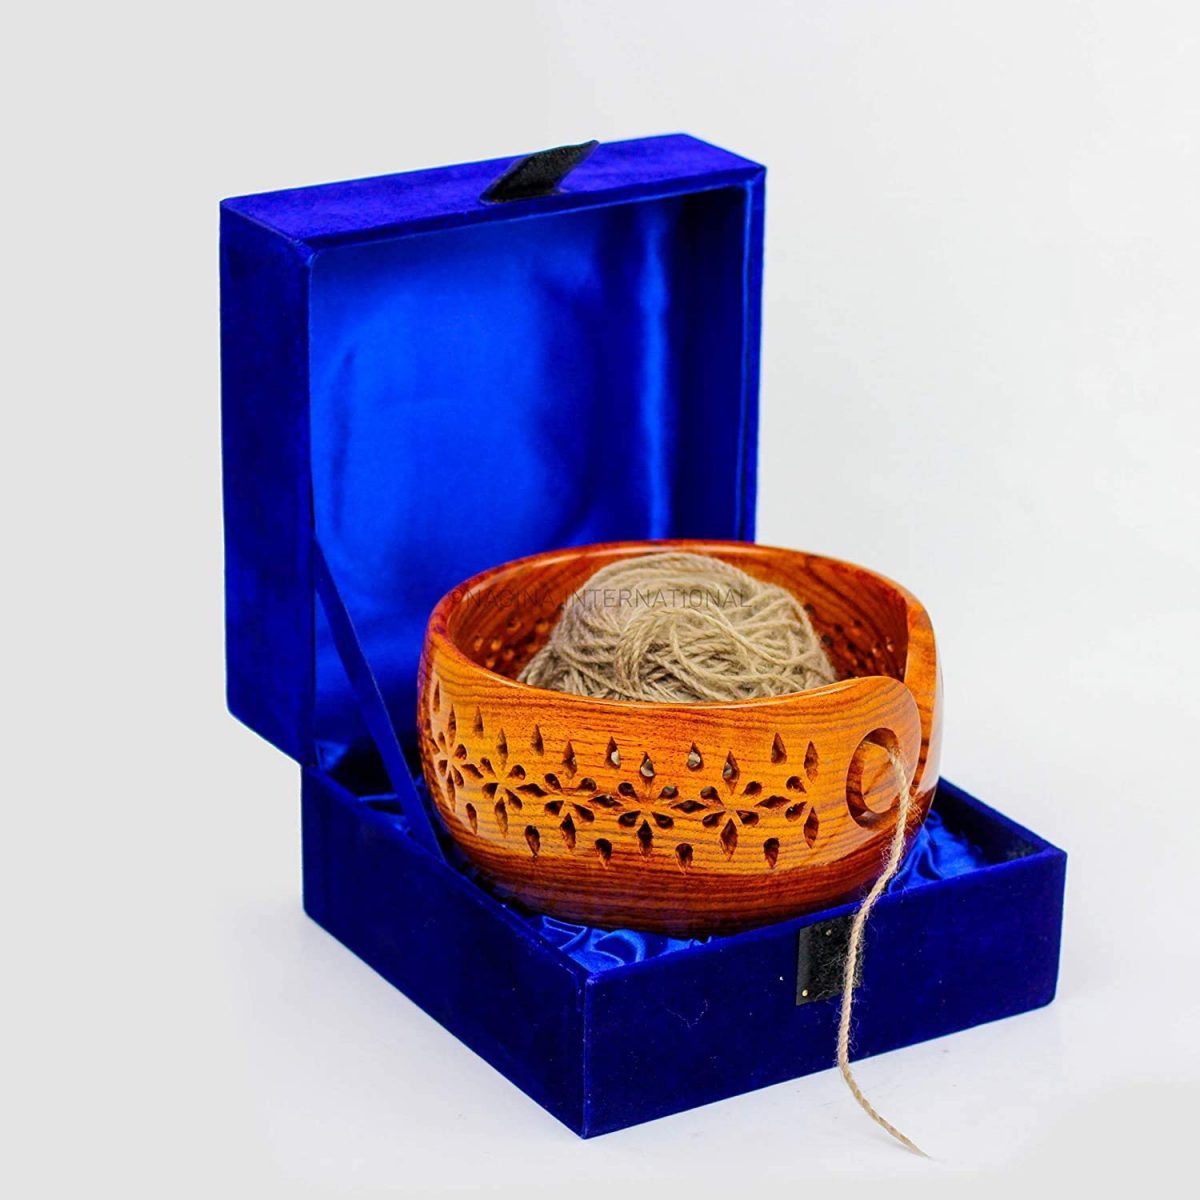 Nagina International Velvety Premium Selected Rosewood Yarn Storage Bowl Aka Dispenser for Knitting & Crocheting in Secured Velvet Pouched Case